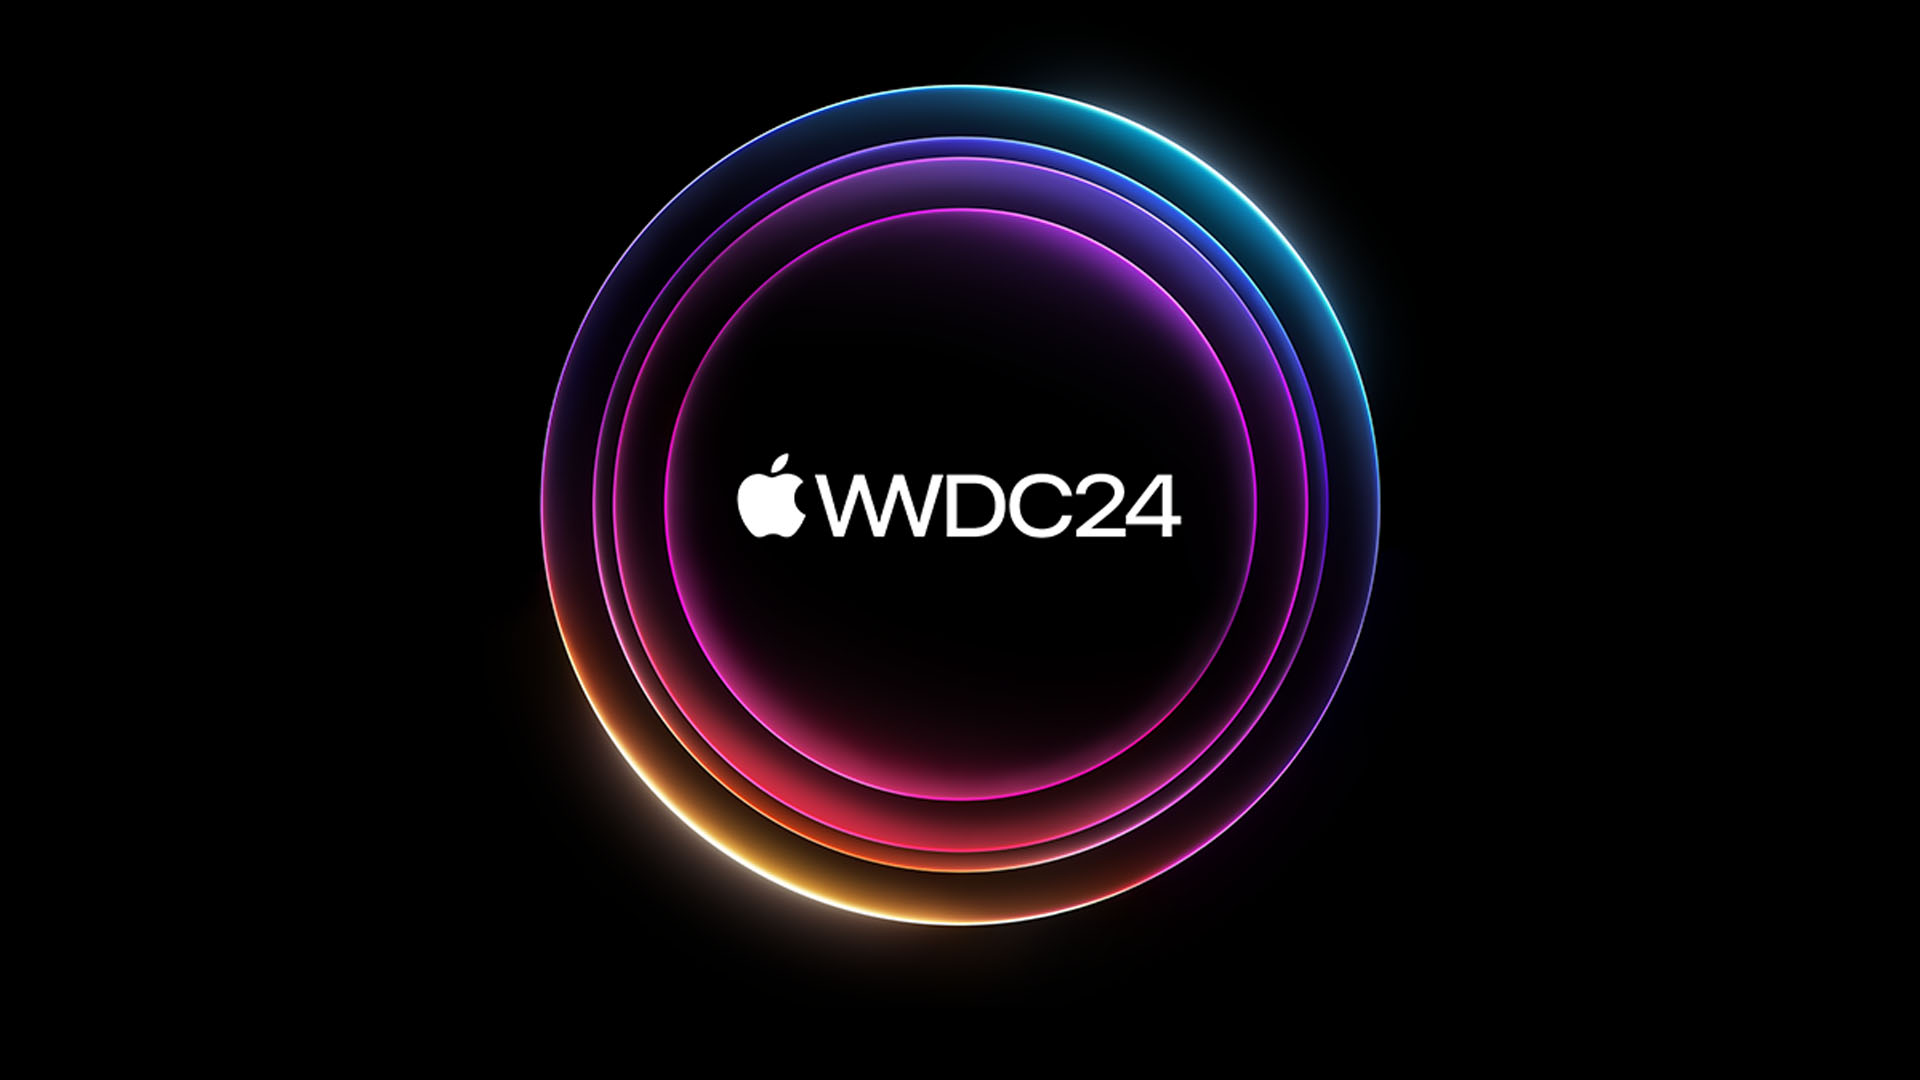 WWDC Etkinliğinde neler tanıtılacak? Apple ne özellikler getirecek